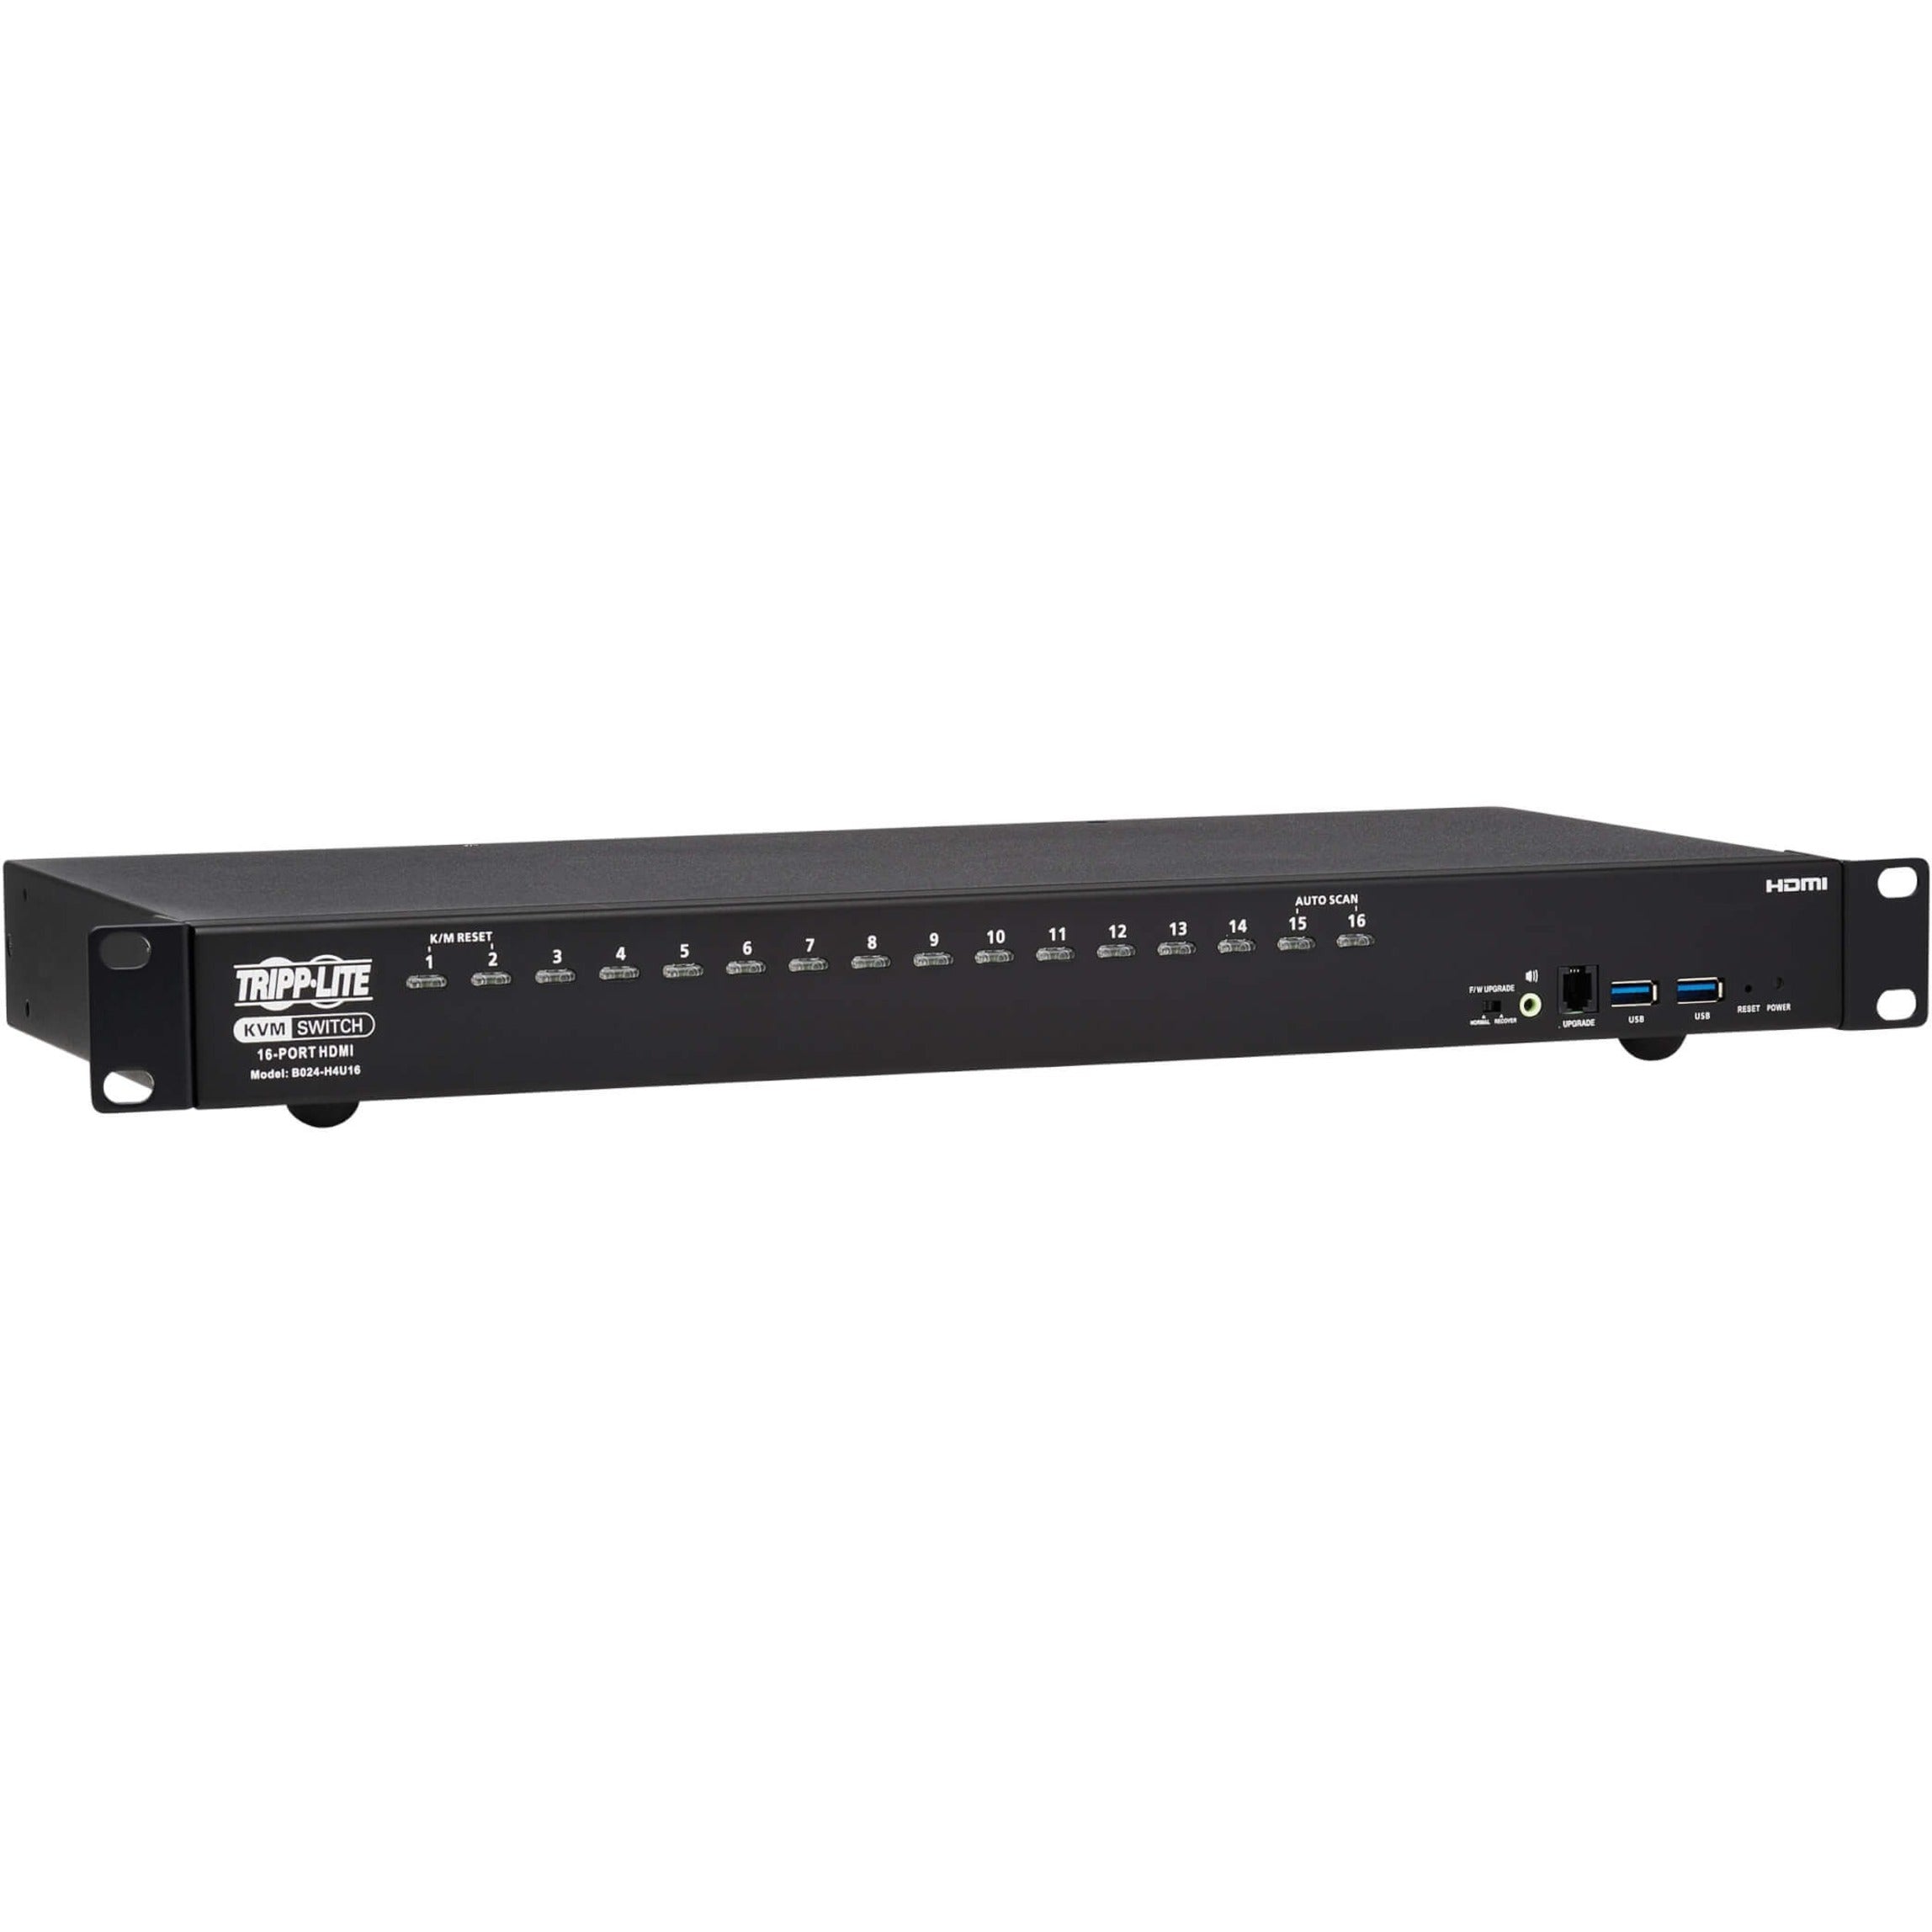 Tripp Lite B024-H4U16 16-Port HDMI/USB KVM Switch, 1U, 4K Resolution, TAA Compliant